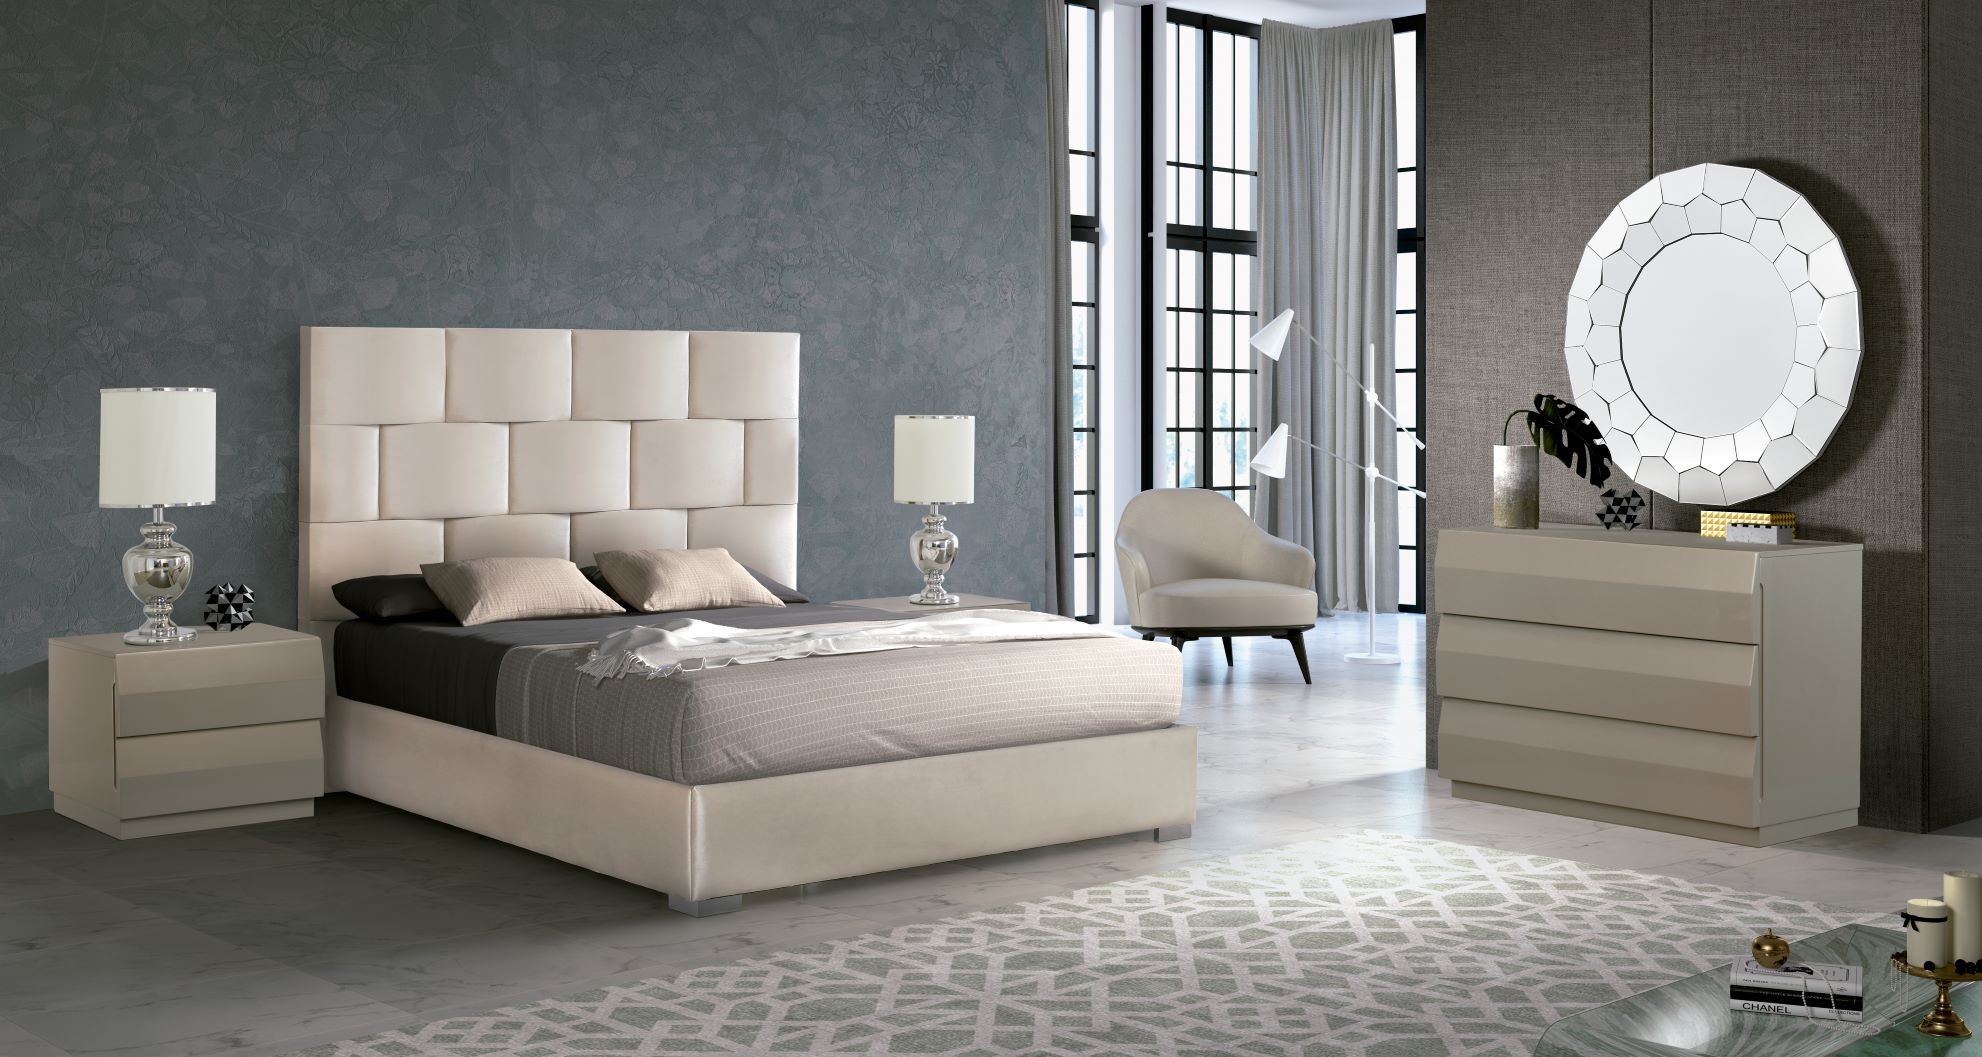 Estila Designová manželská postel Berlin s bílým koženým čalouněním as úložným prostorem 150-180cm